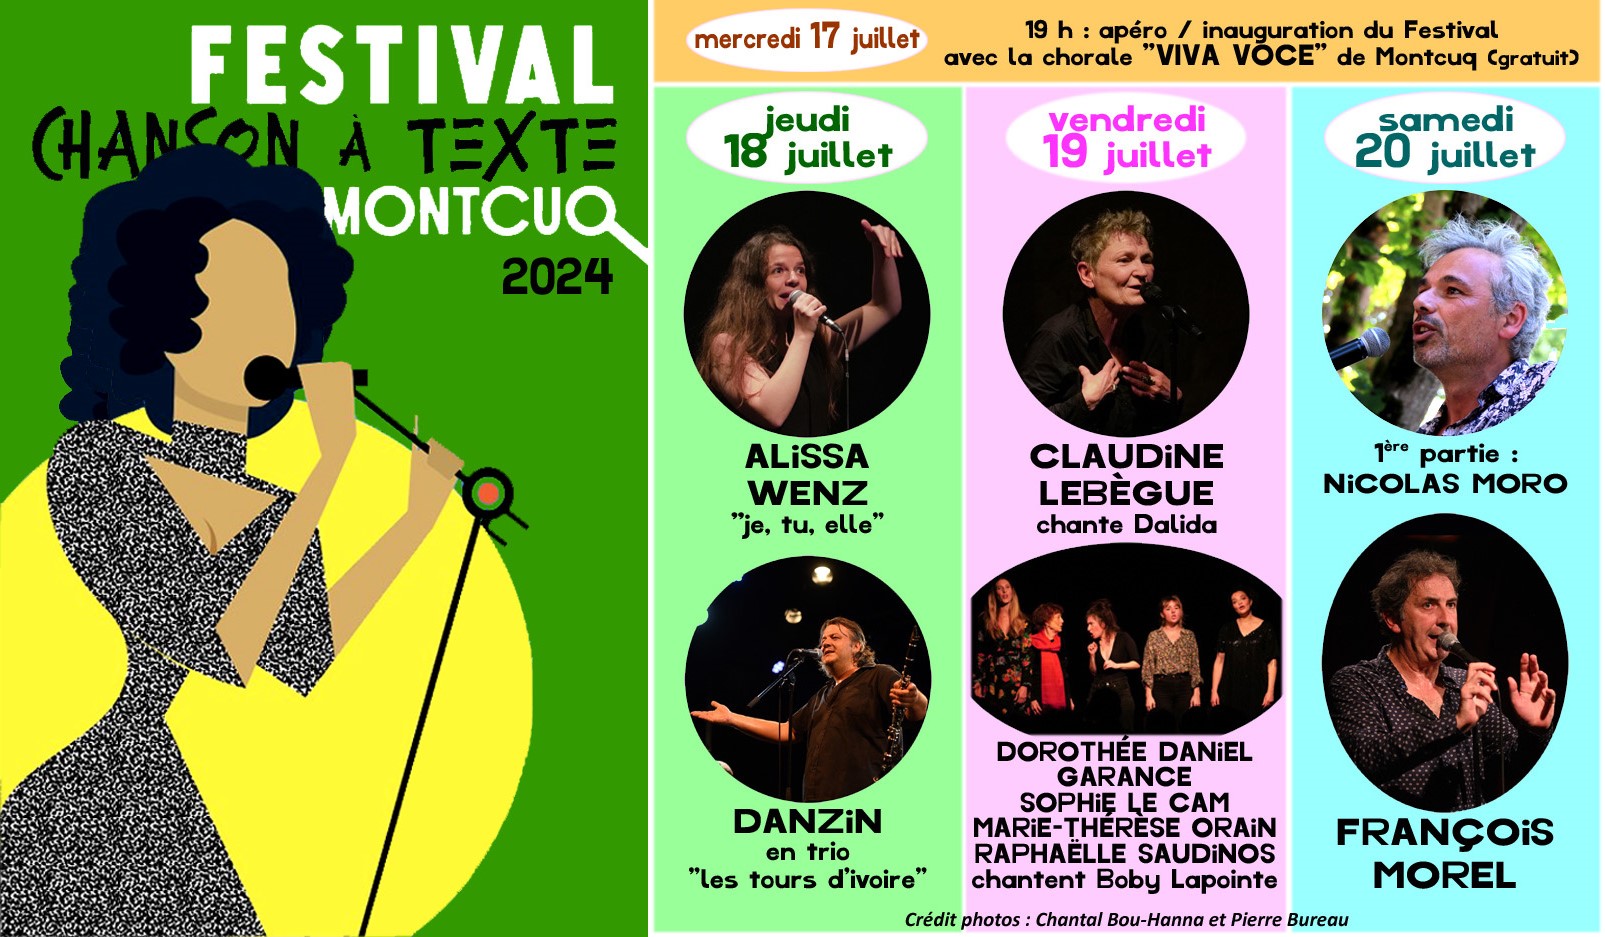 Figeac : Festival de la Chanson à Texte de Montcuq : Danzin en trio 